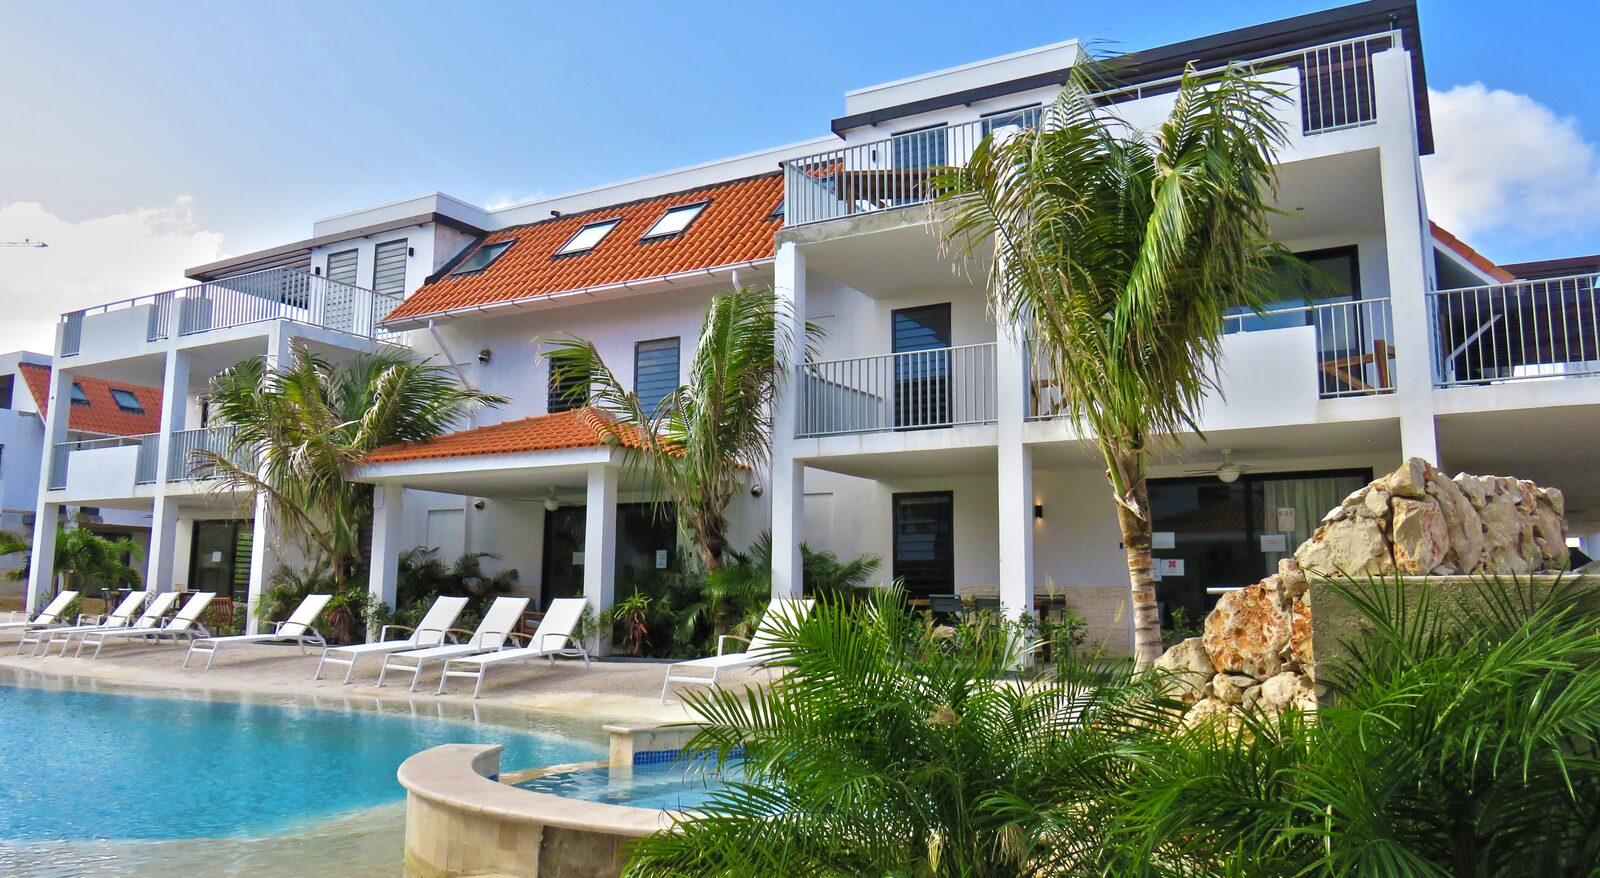 Ihr Ferienhaus auf Bonaire